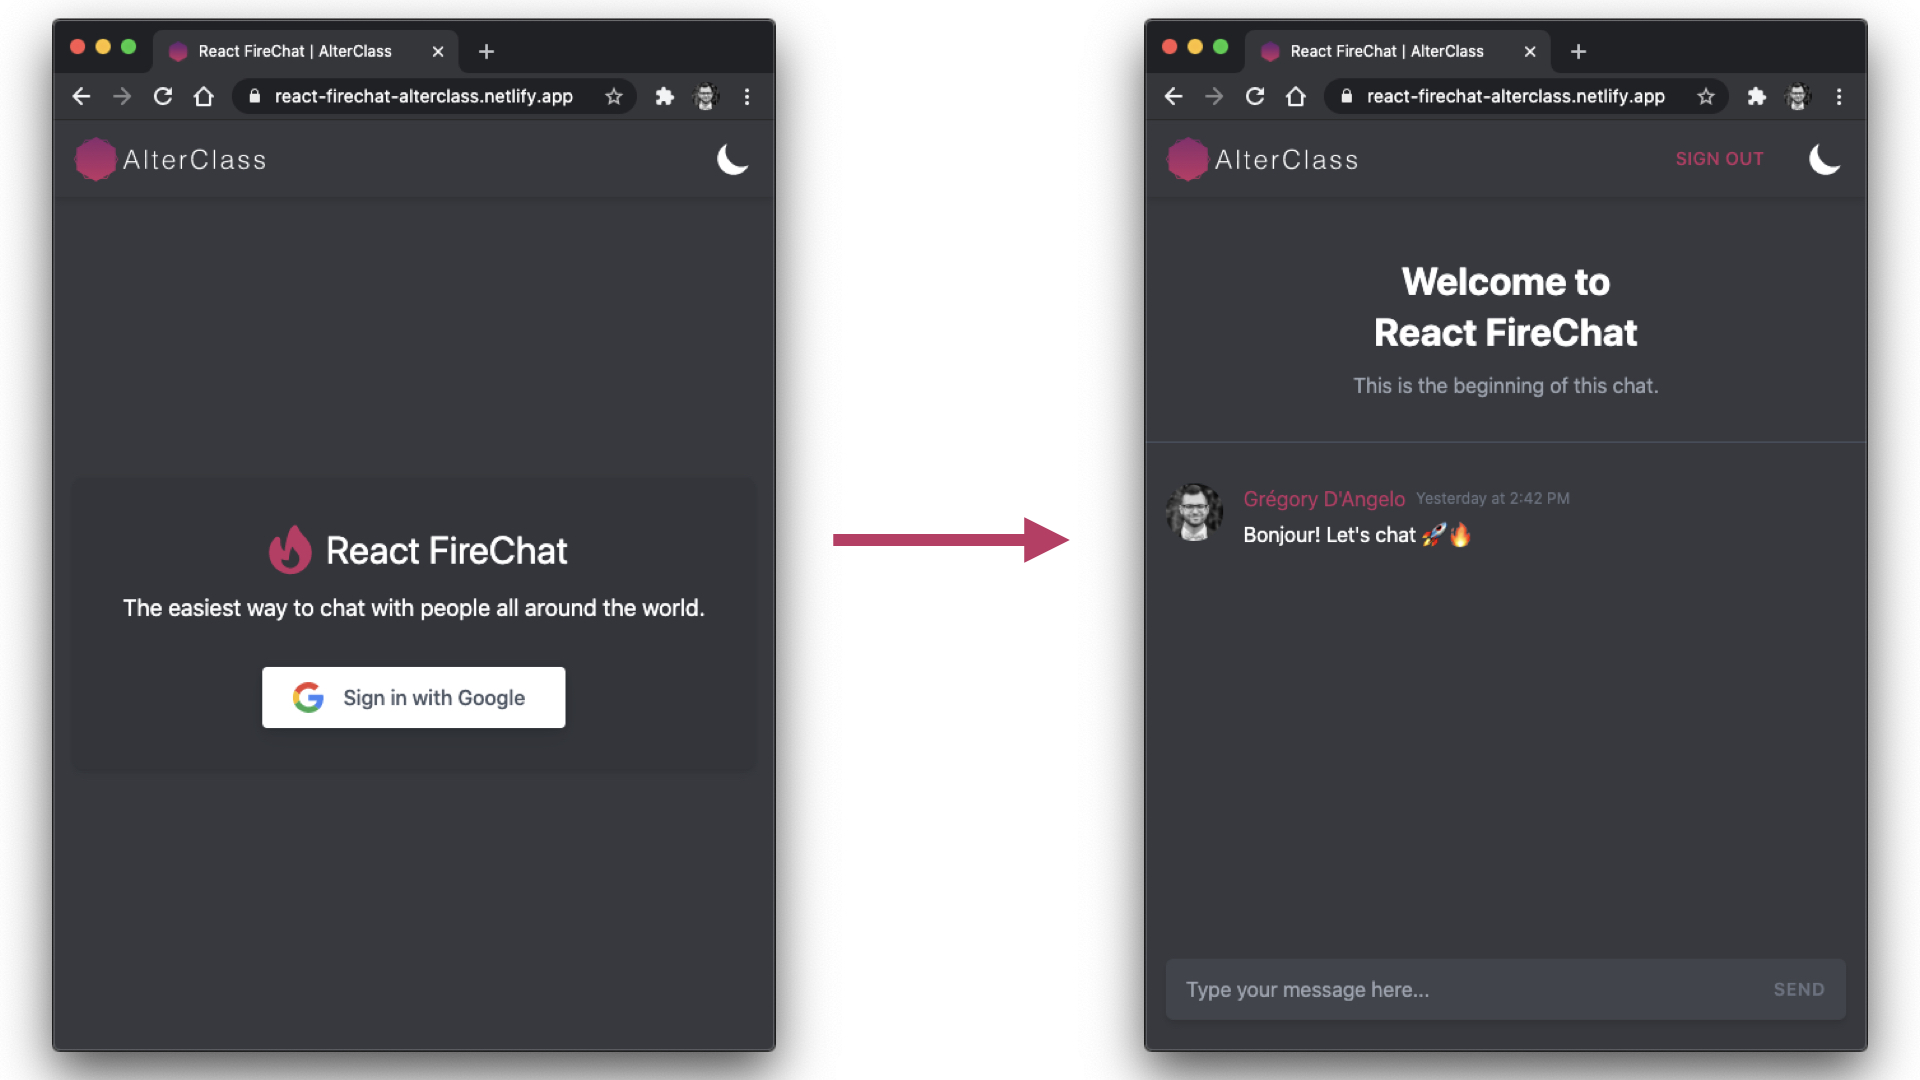 React Firebase App Views